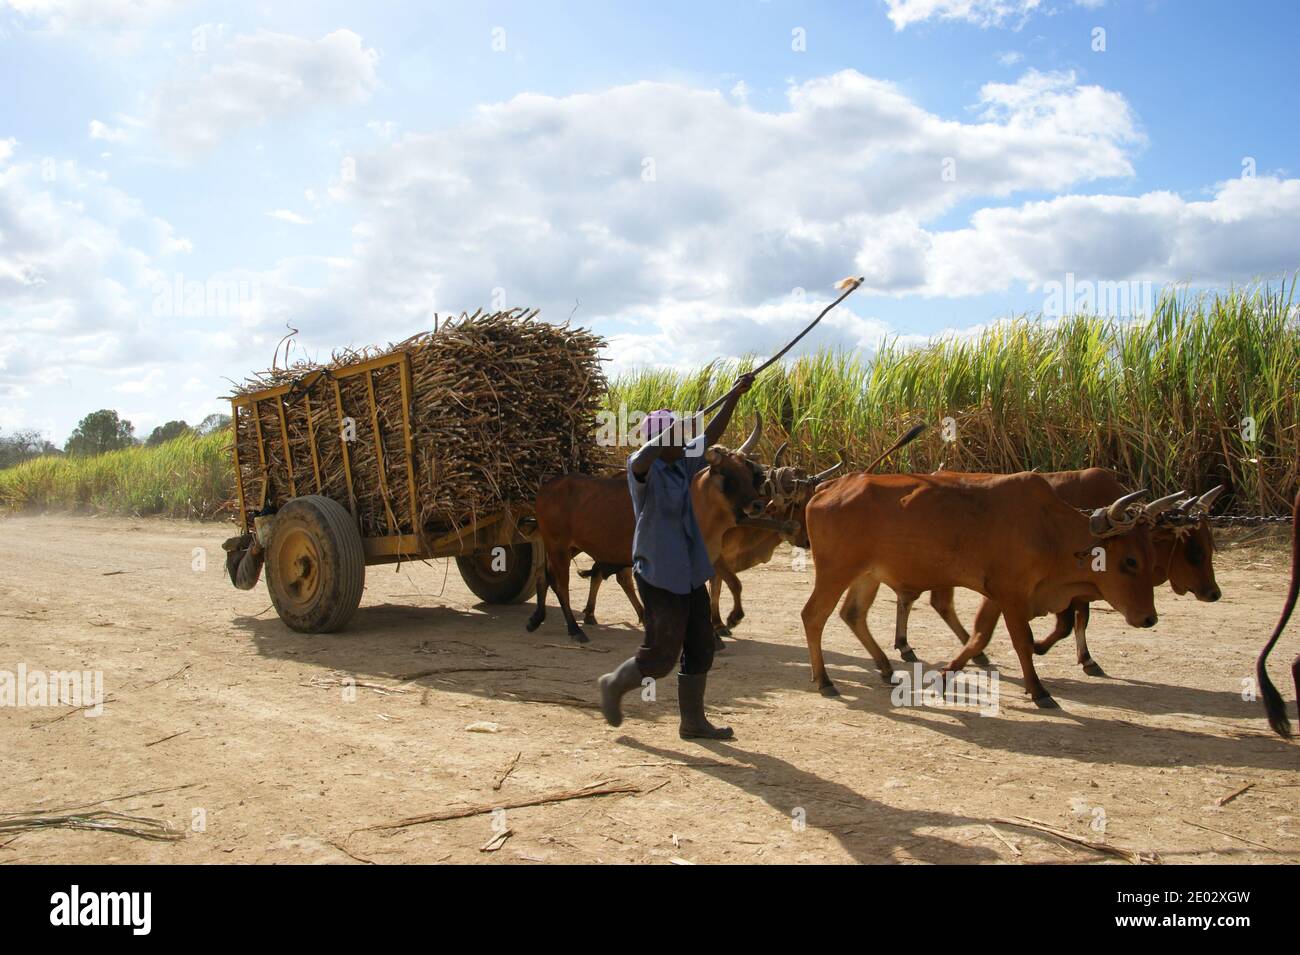 Un campesino está transportando caña de azúcar en un carro dibujado por bueyes para los trabajadores. Bayahibe, la Romana, República Dominicana Foto de stock